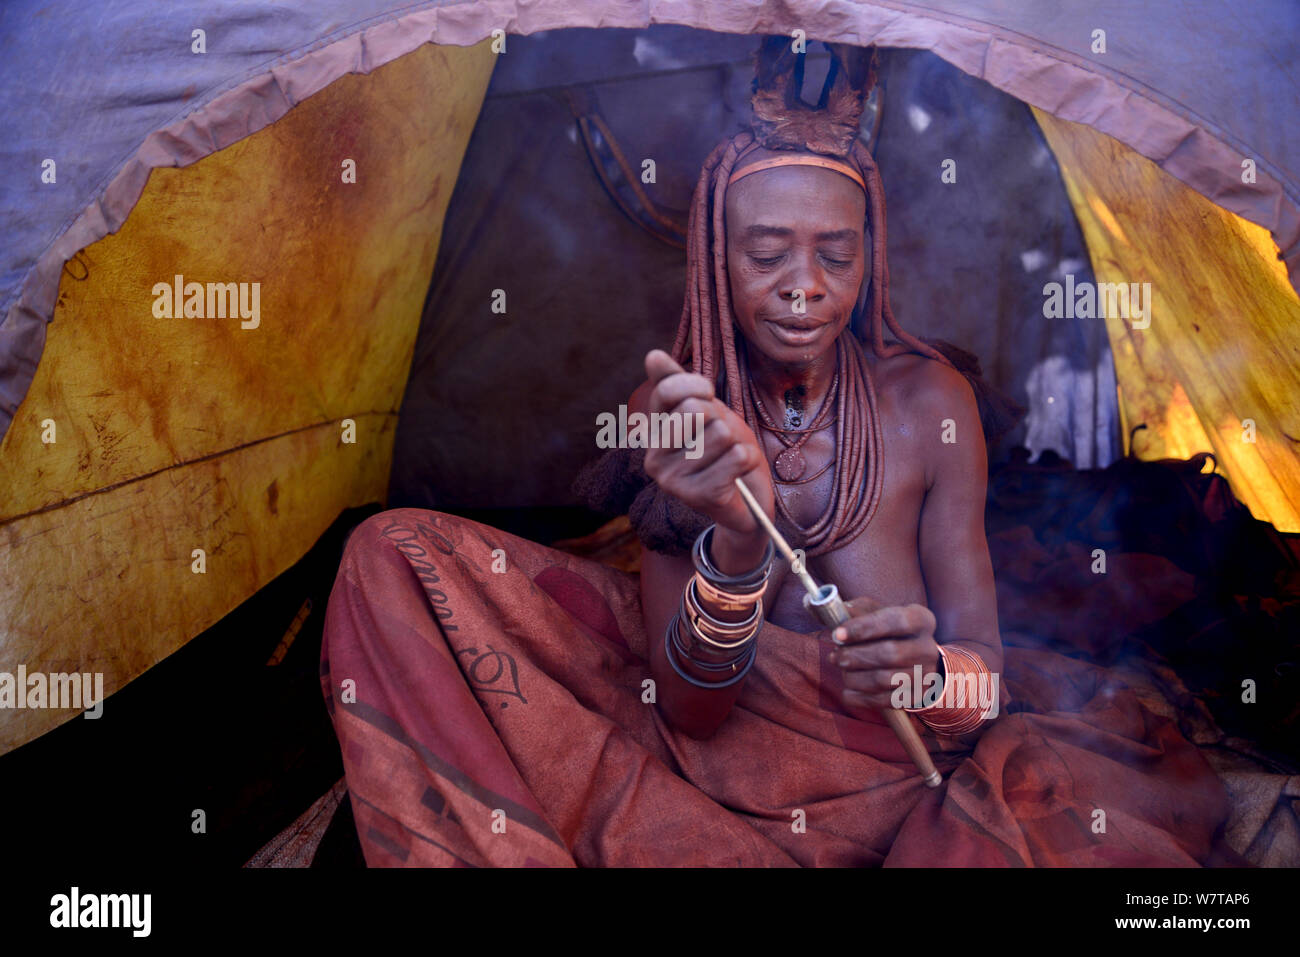 Himba woman snorting nasal snuff tobacco in camping tent, Himba village, Kaokoland, Namibia, September 2013. Stock Photo